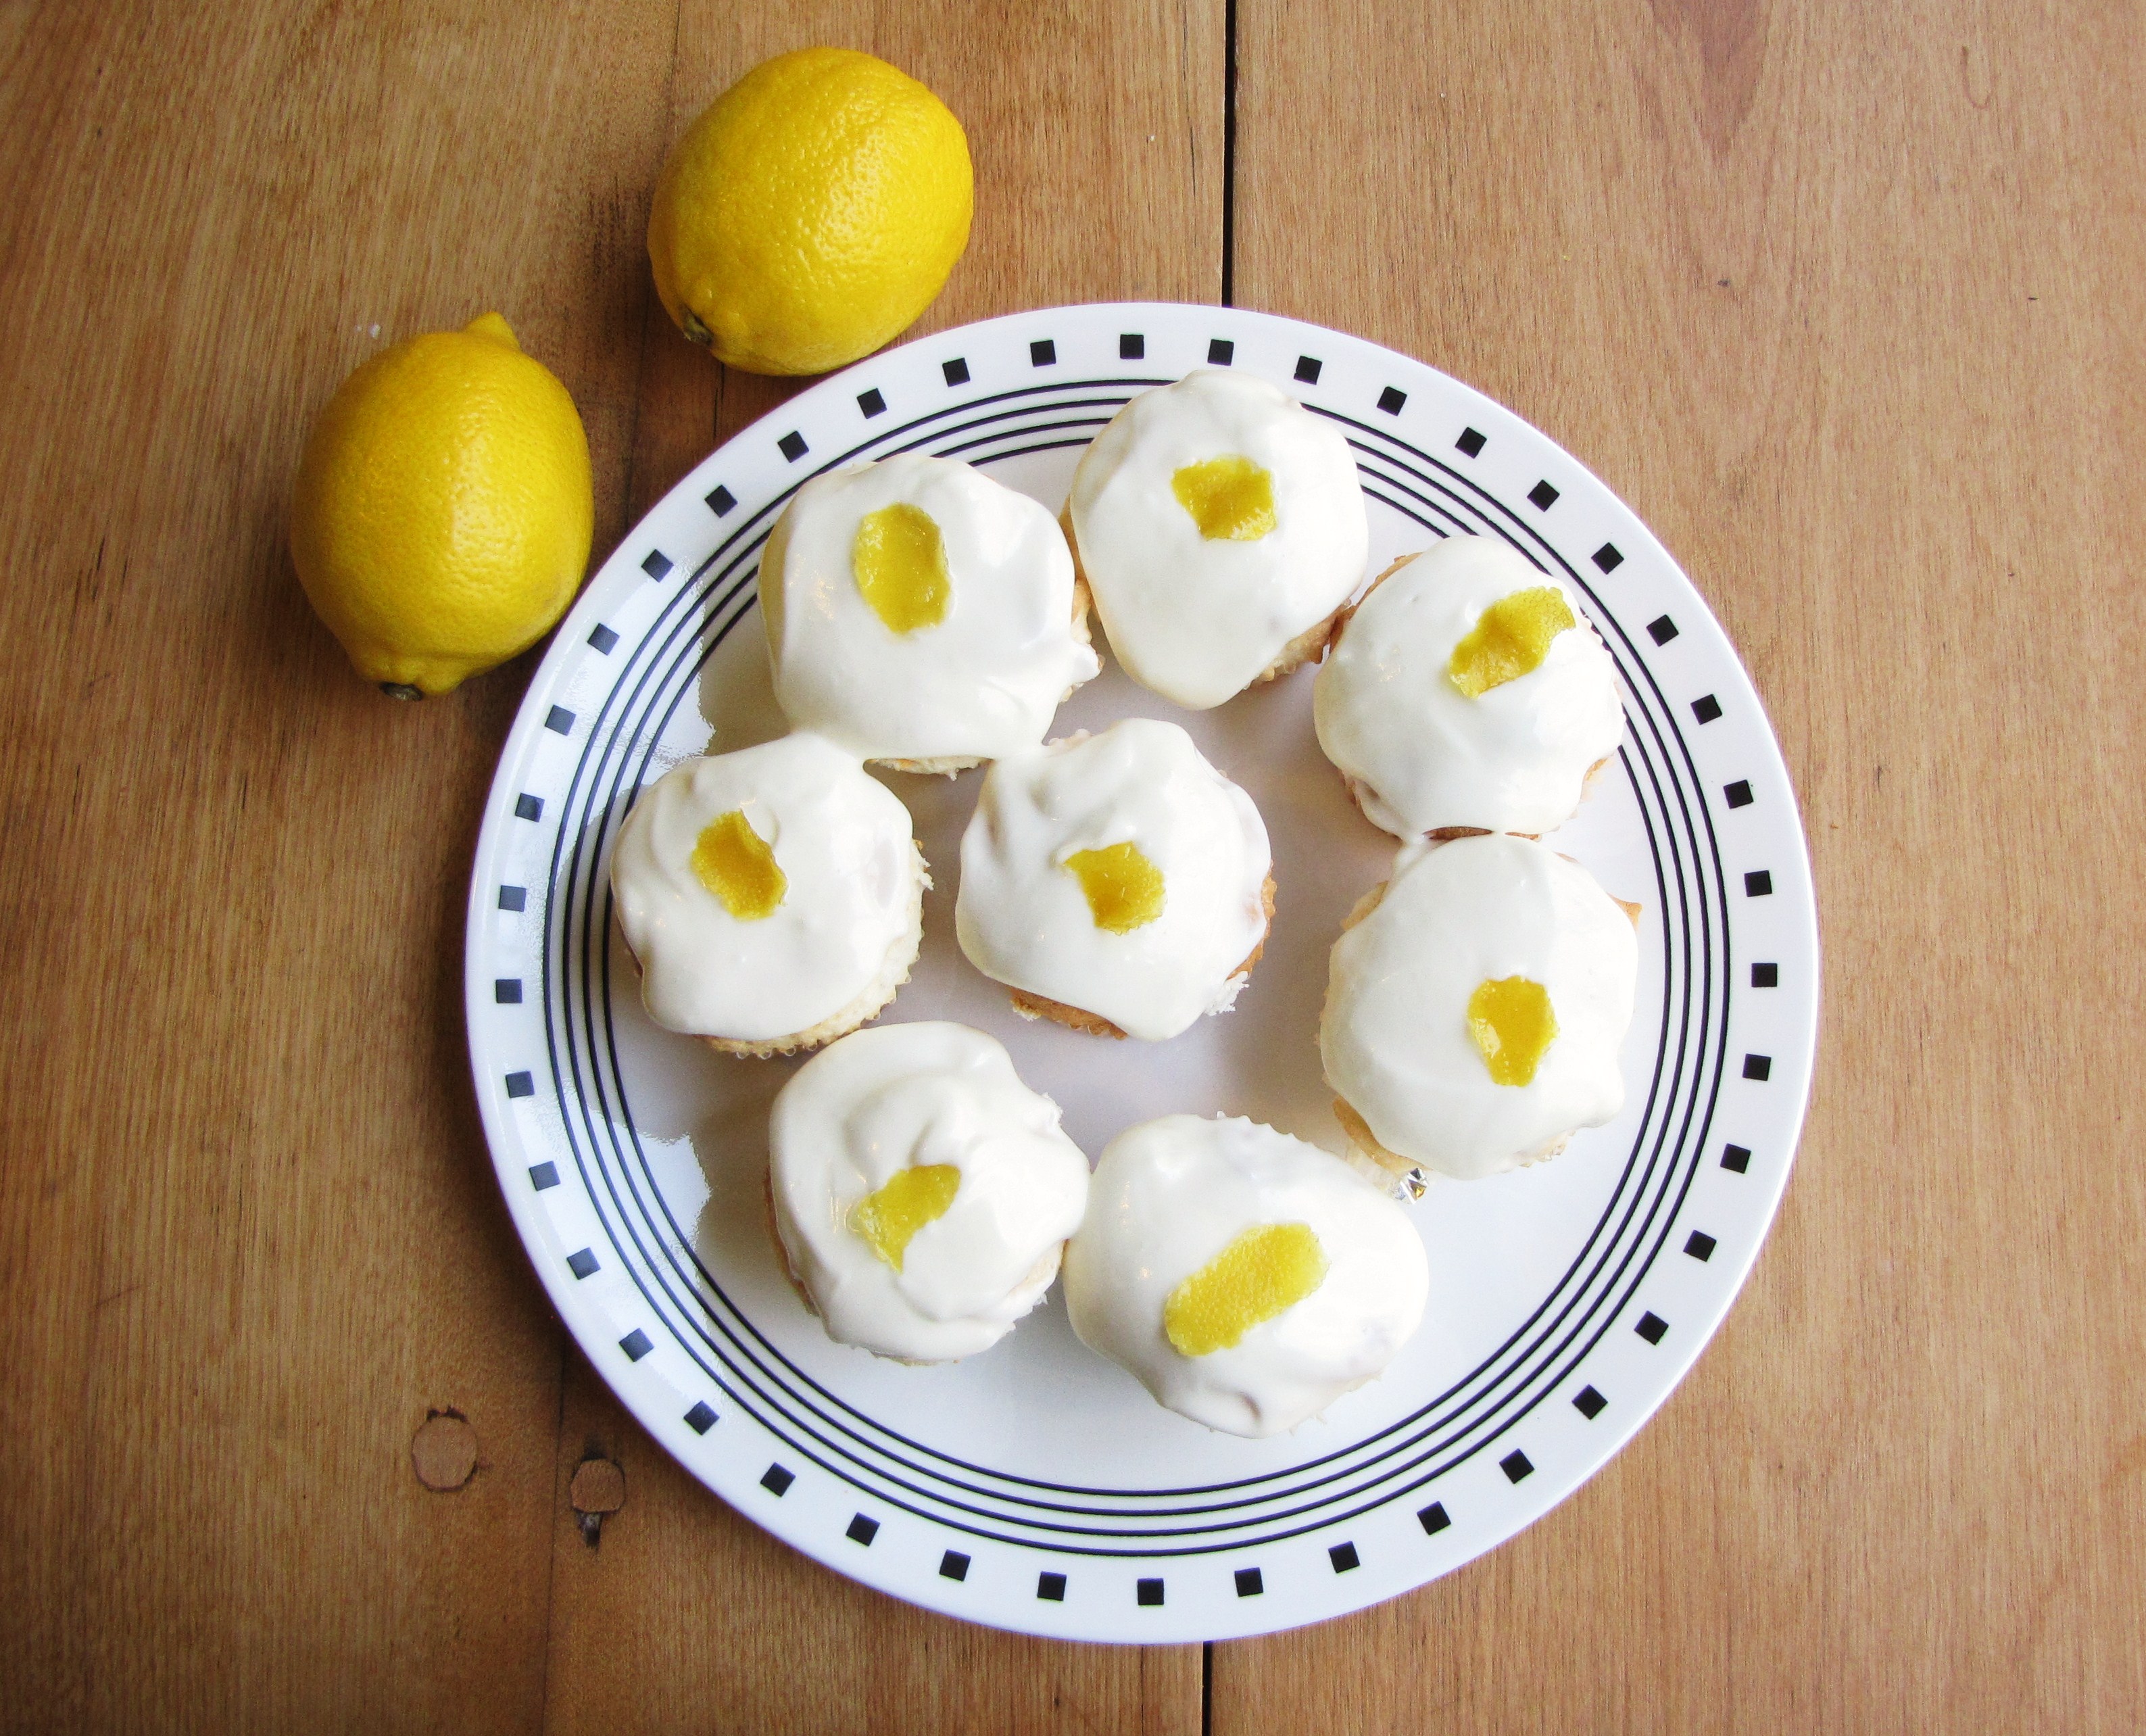 Celebrating with Lemons